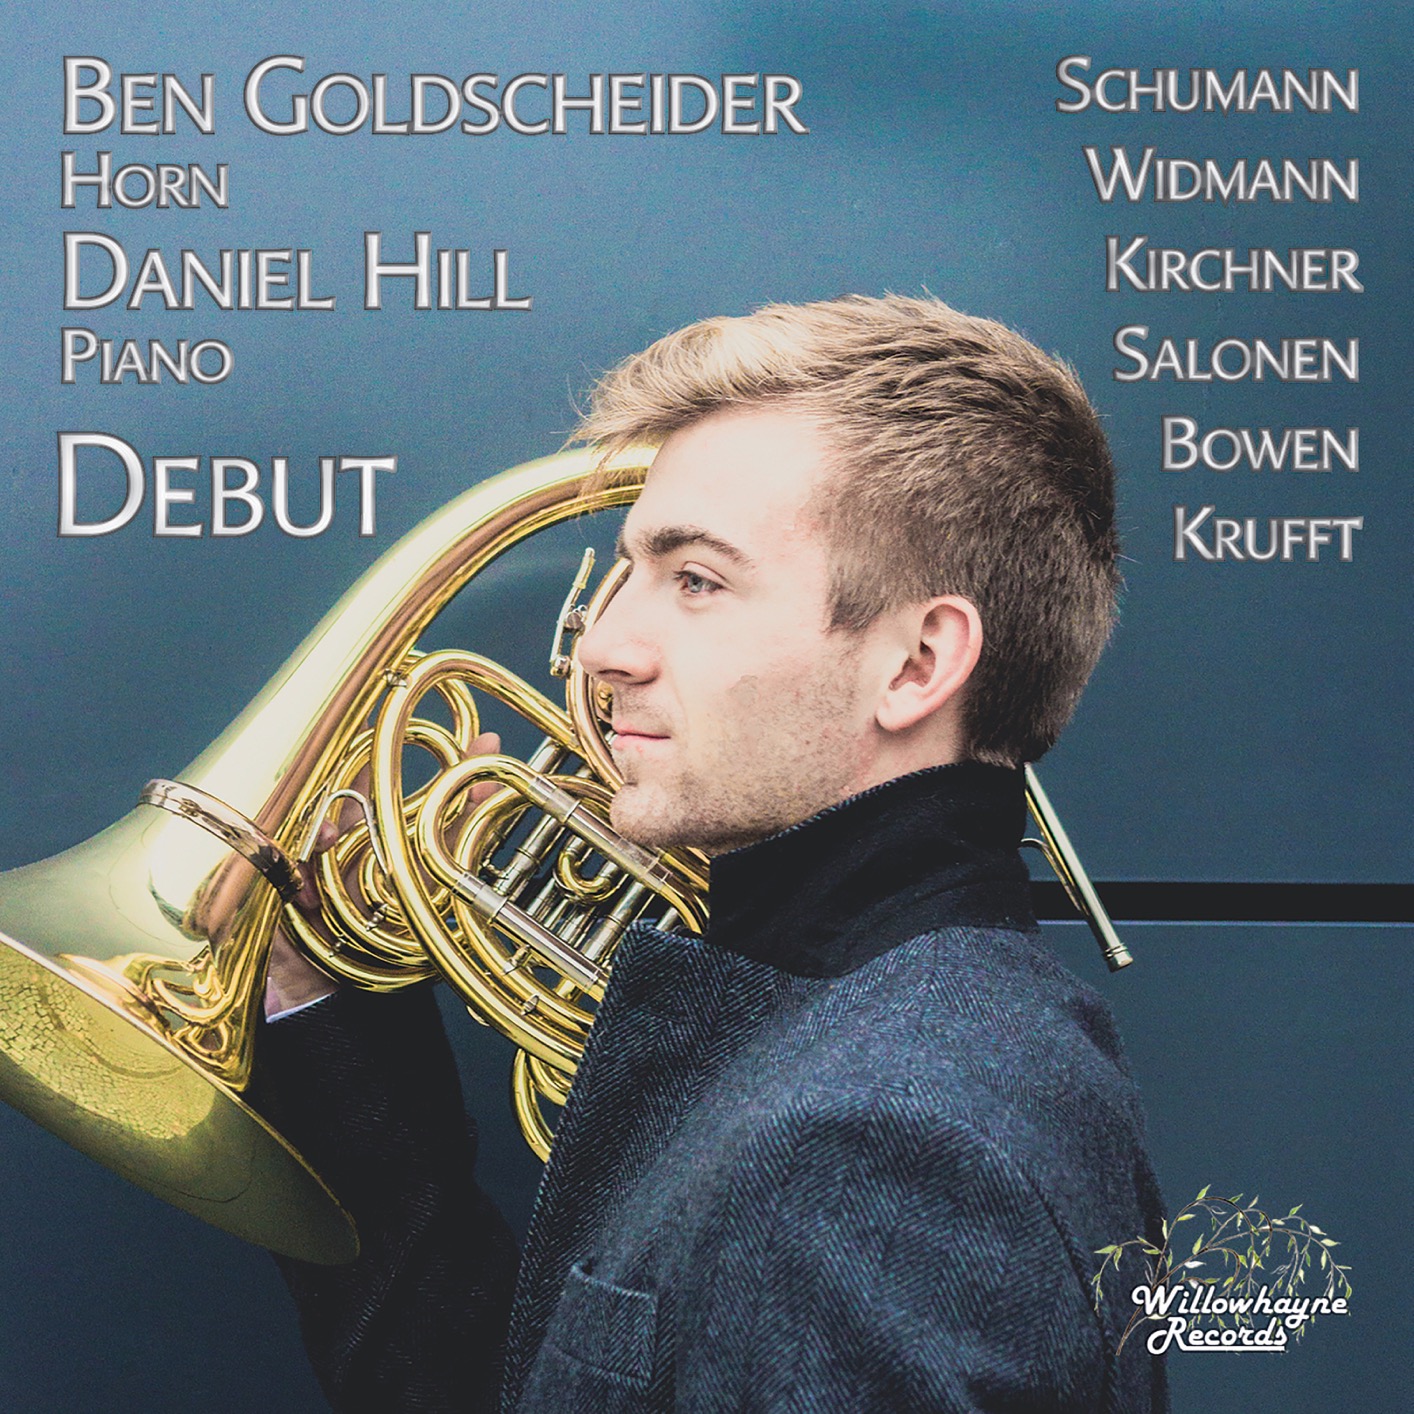 Ben Goldscheider & Daniel Hill - Debut (2018) [FLAC 24bit/192kHz]